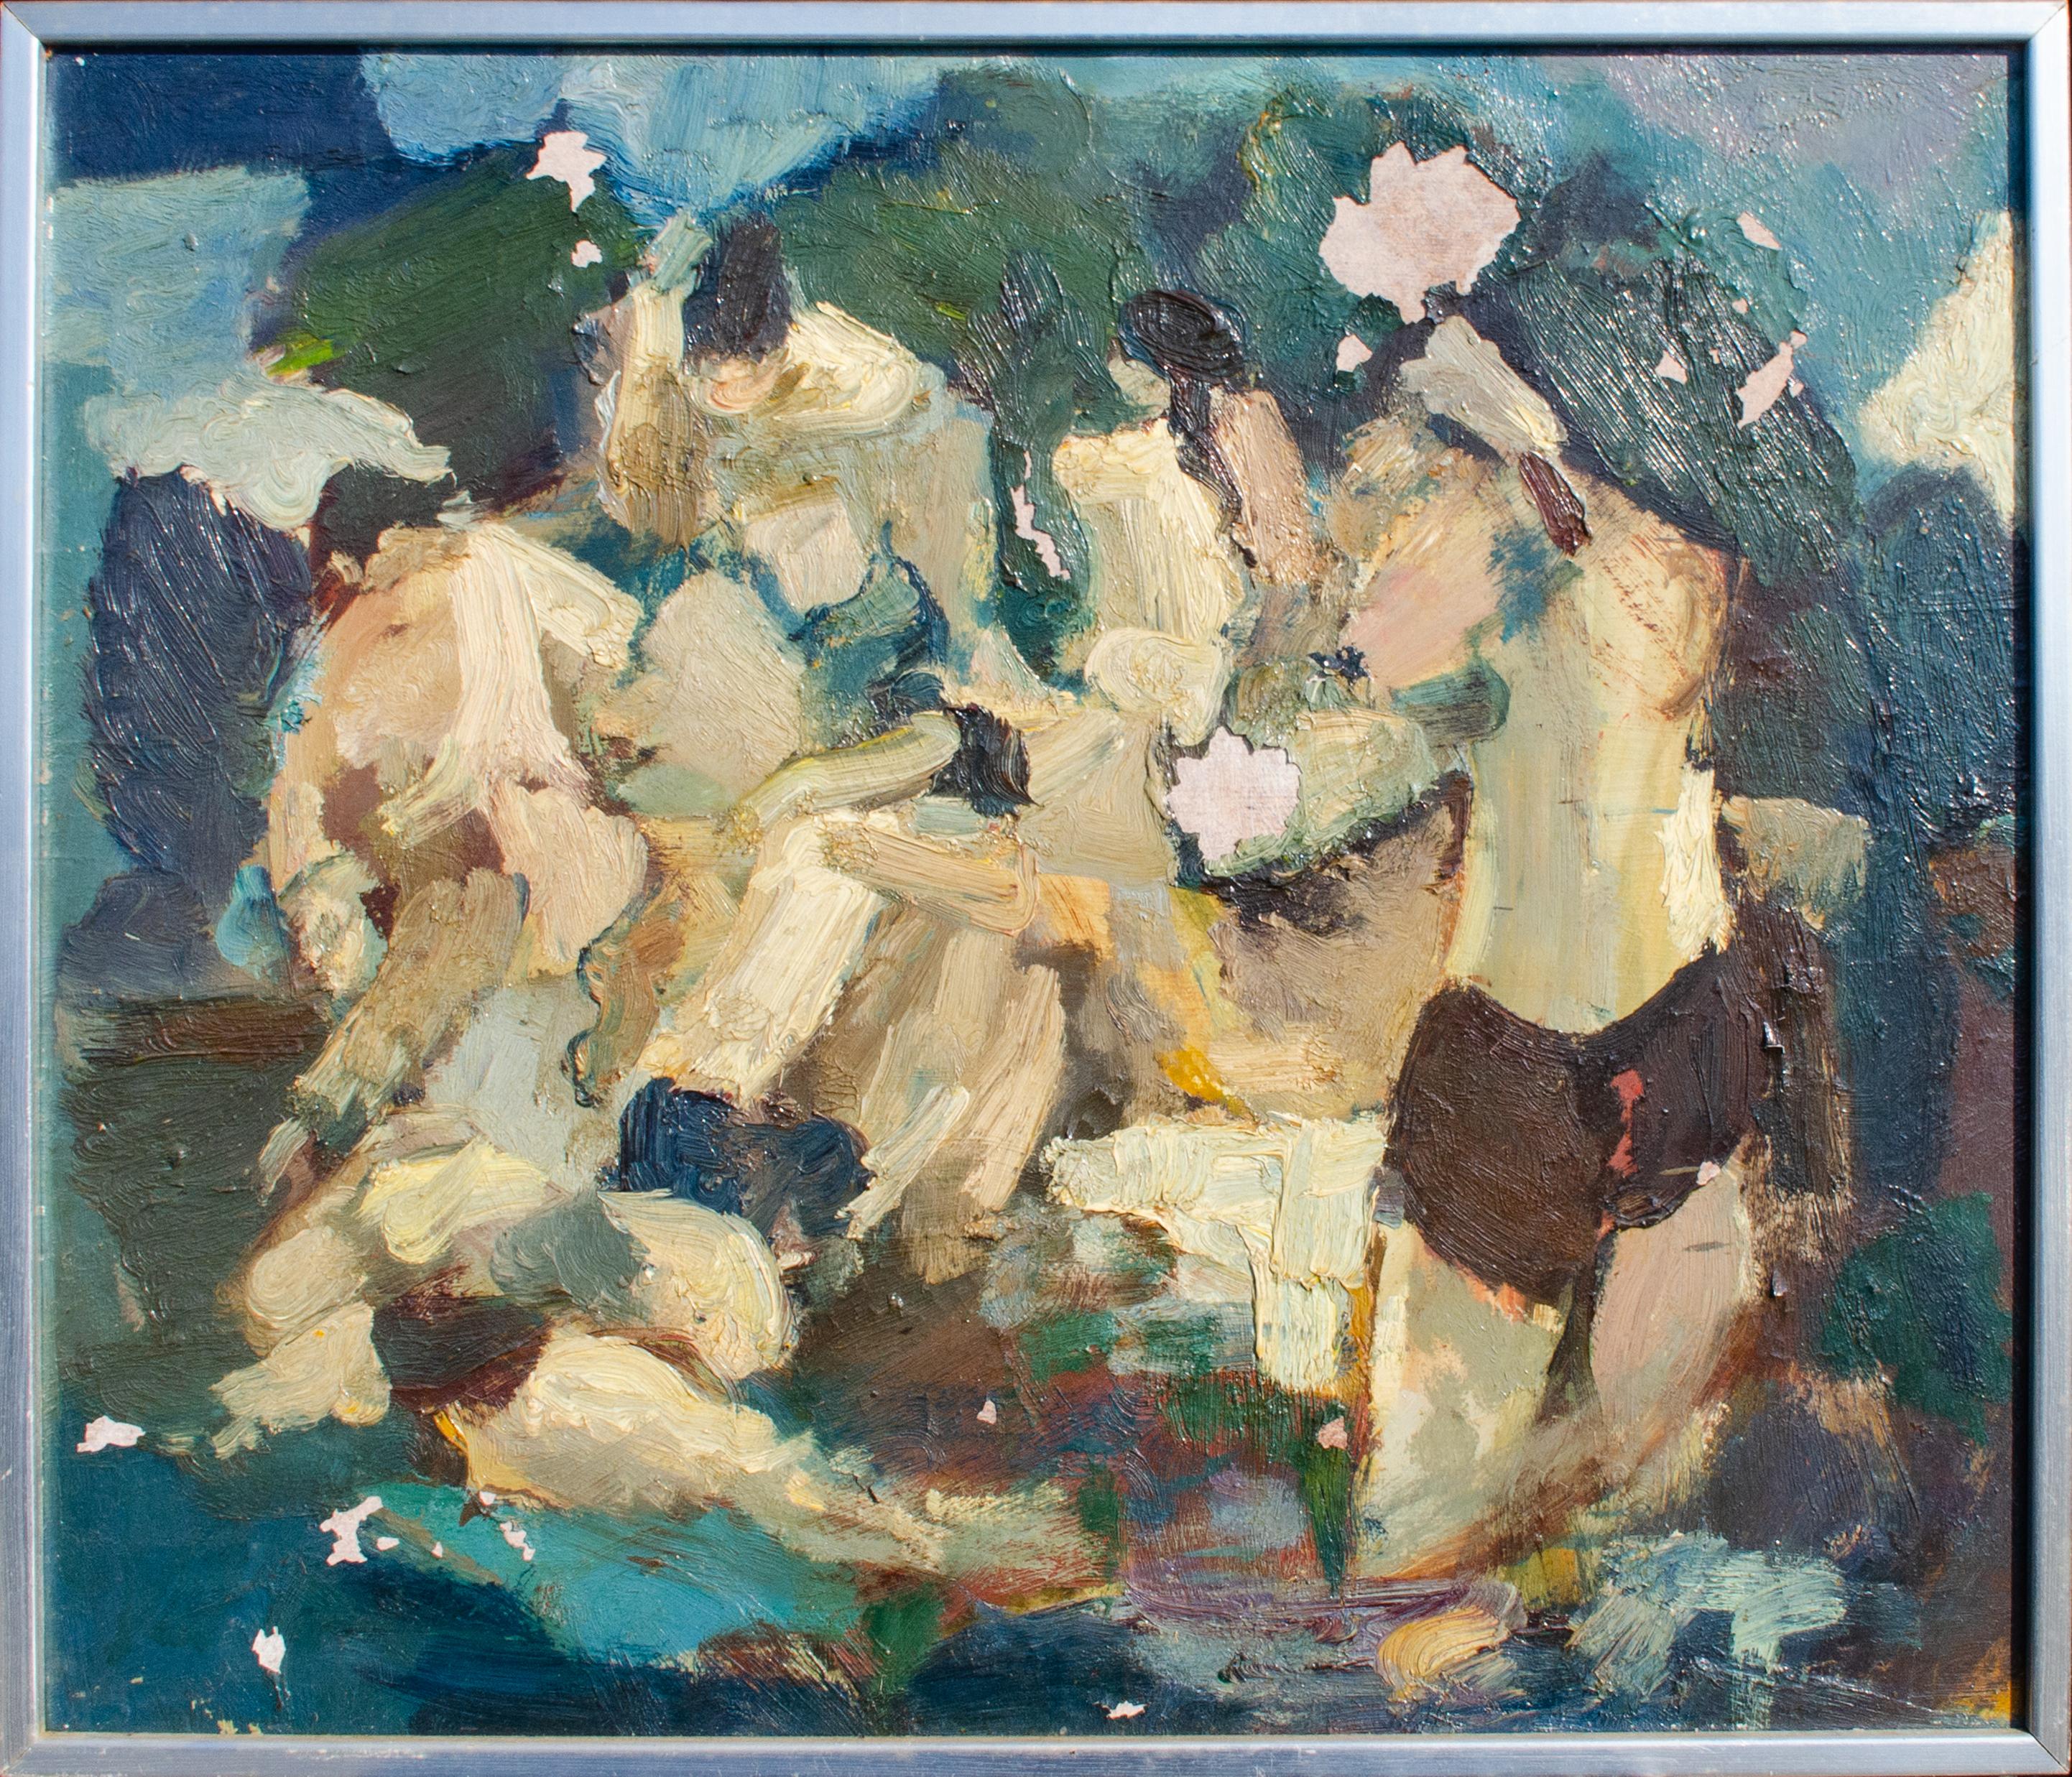 Syril Frank Nude Painting – Wunderschöne abstrakt-expressionistische Figuren des Mystery-Künstlers